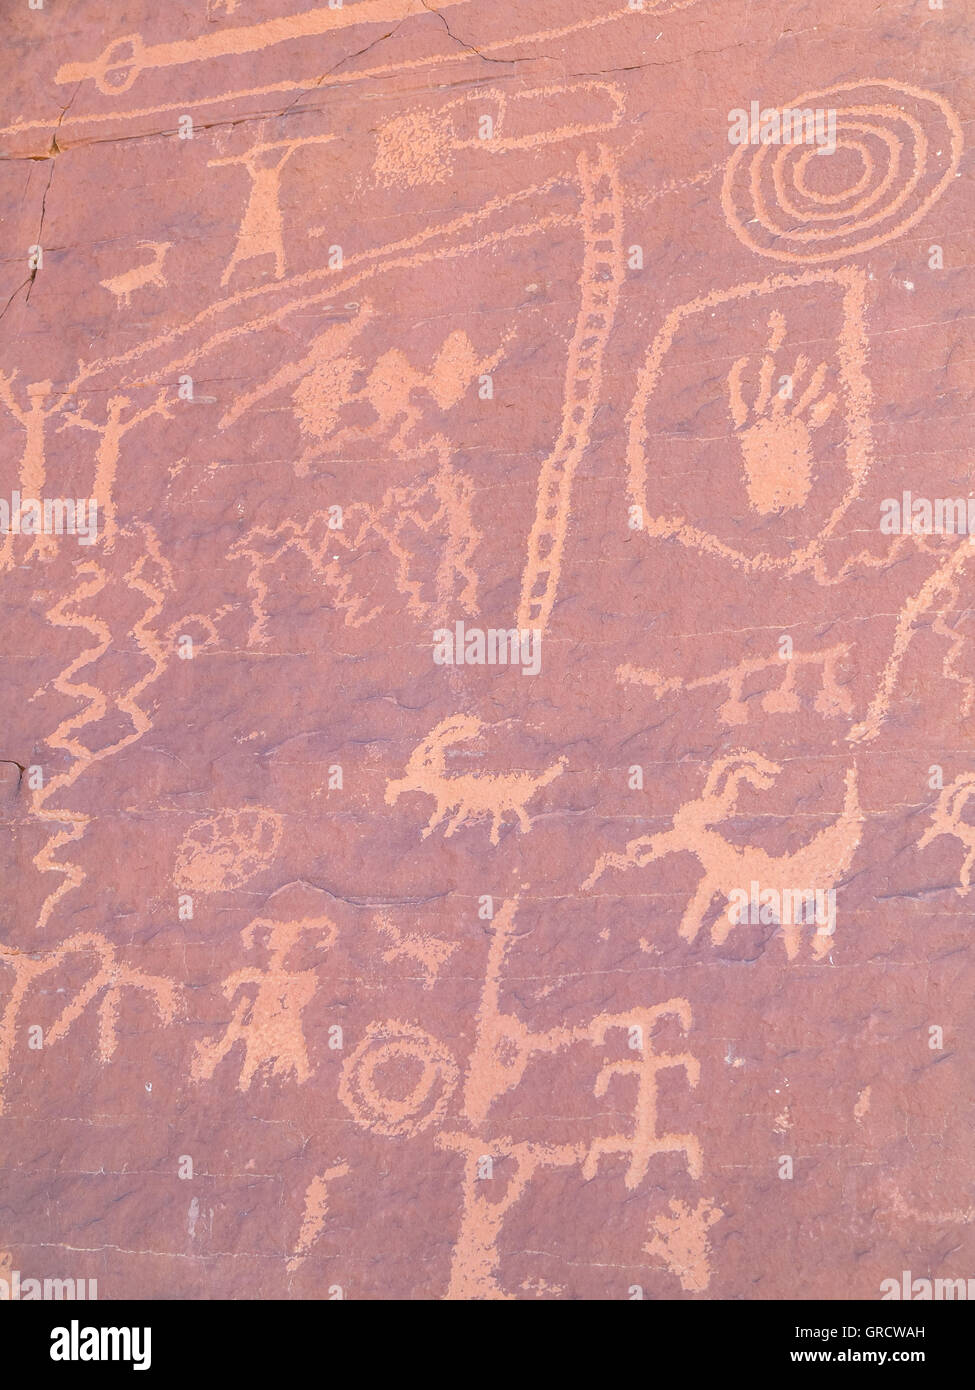 Pinturas rupestres en el Valle de Fuego, Nevada, EE.UU. Foto de stock